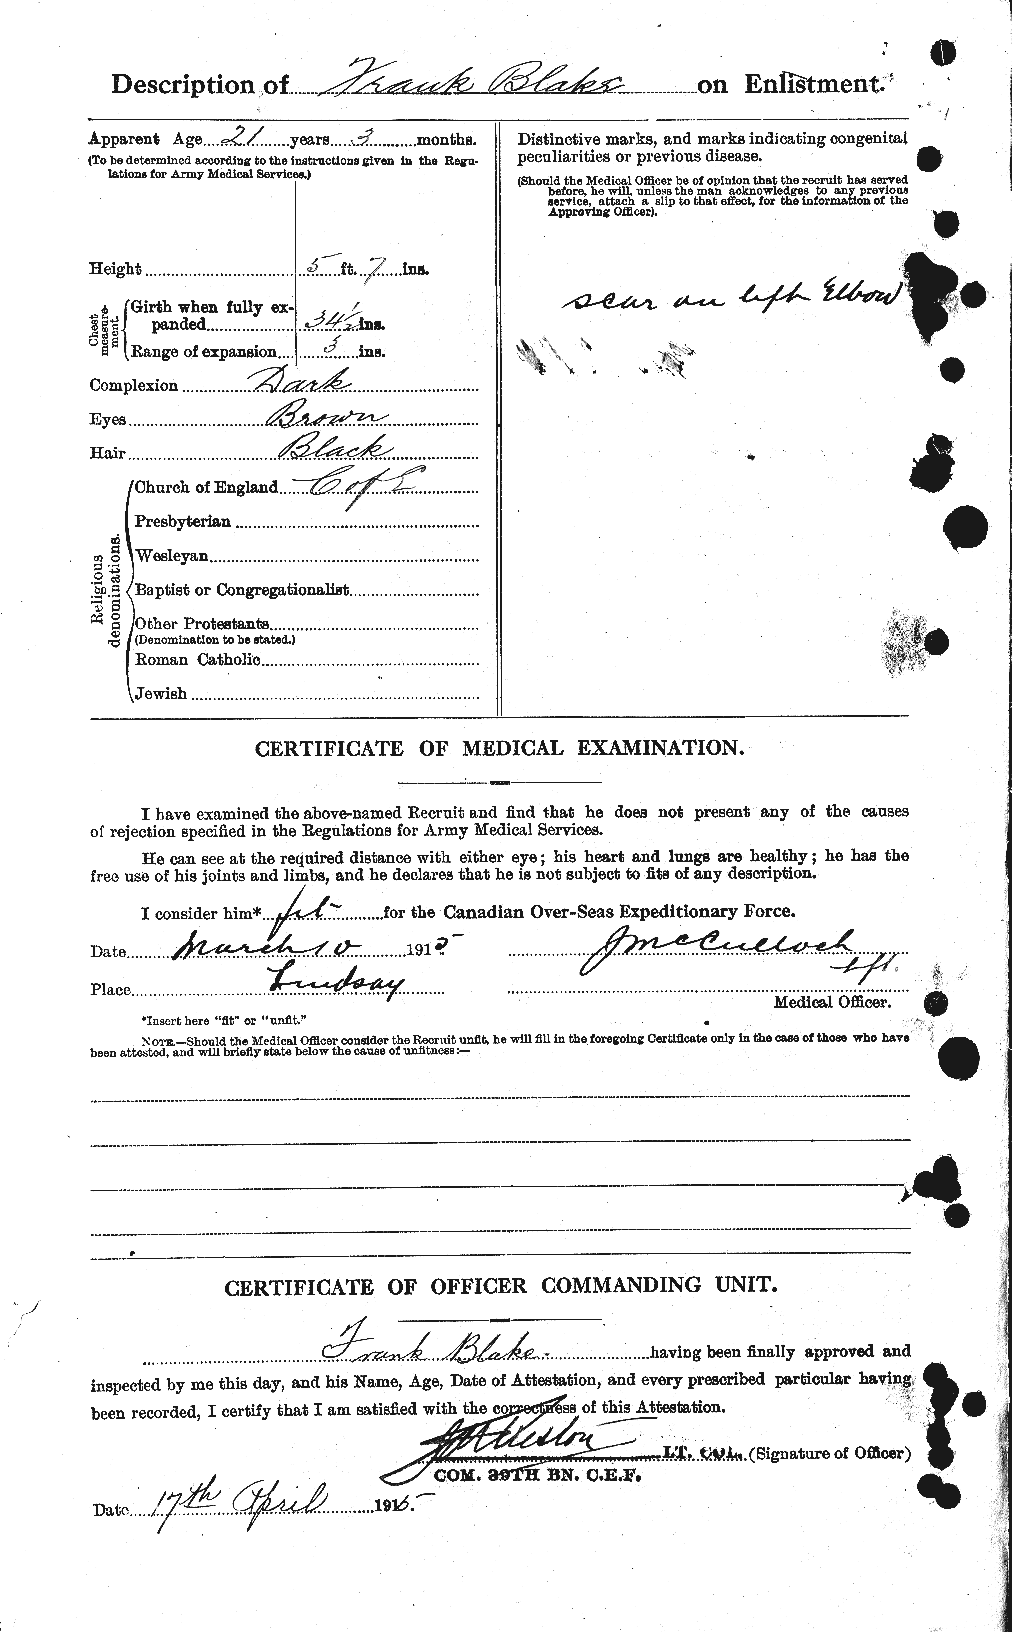 Dossiers du Personnel de la Première Guerre mondiale - CEC 245833b